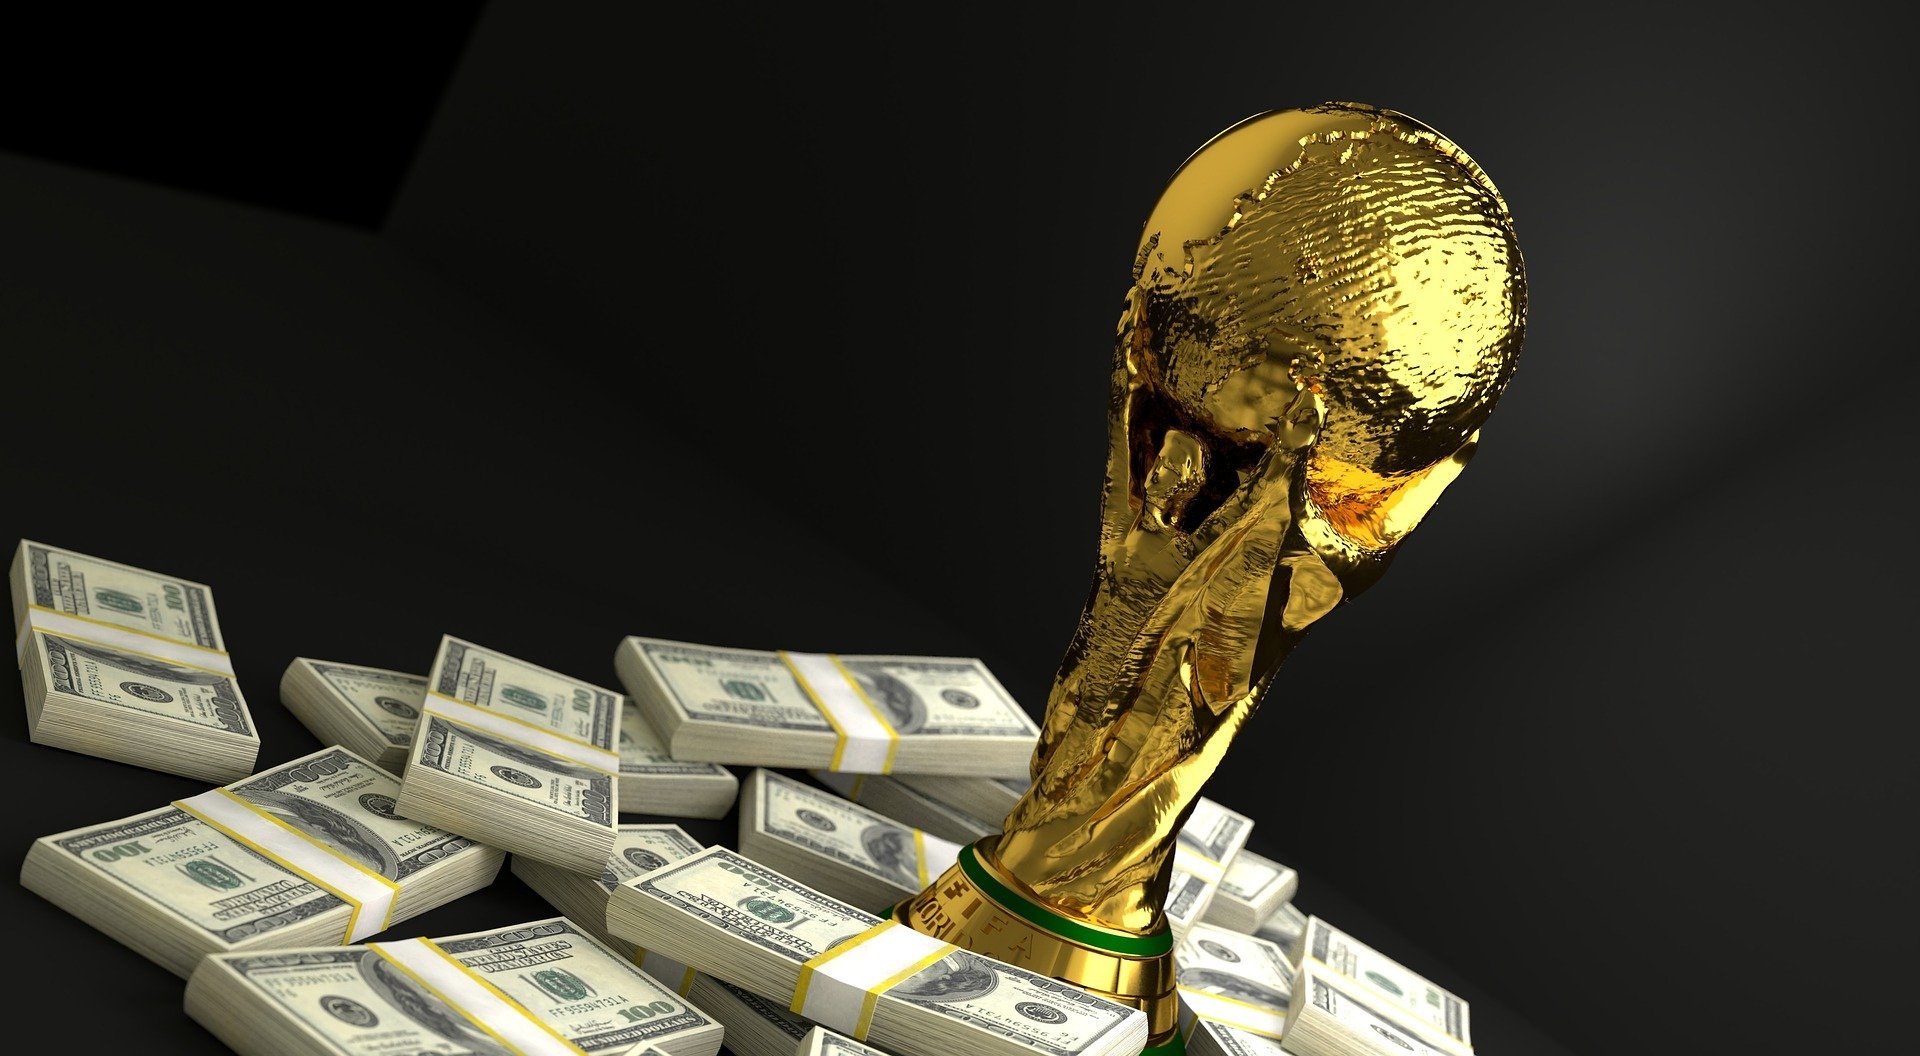 Apostar no Brasil na Copa do Mundo pode te garantir odds de até 50,00. Quer saber como? Clique aqui e descubra essa promoção incrível.